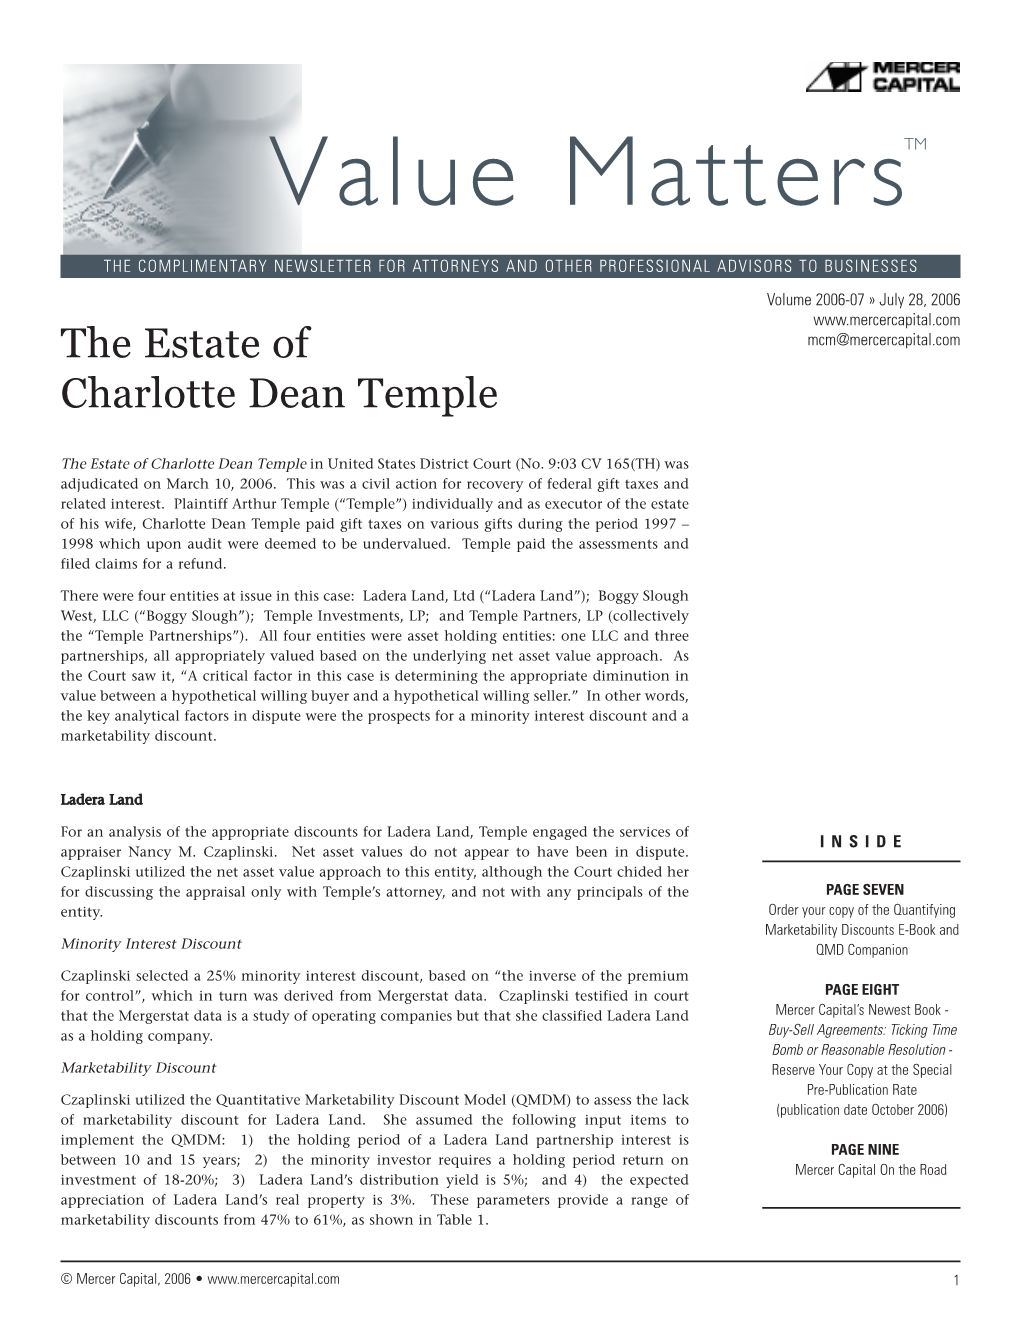 Mercer Capital's Value Matters (TM) 2006-07